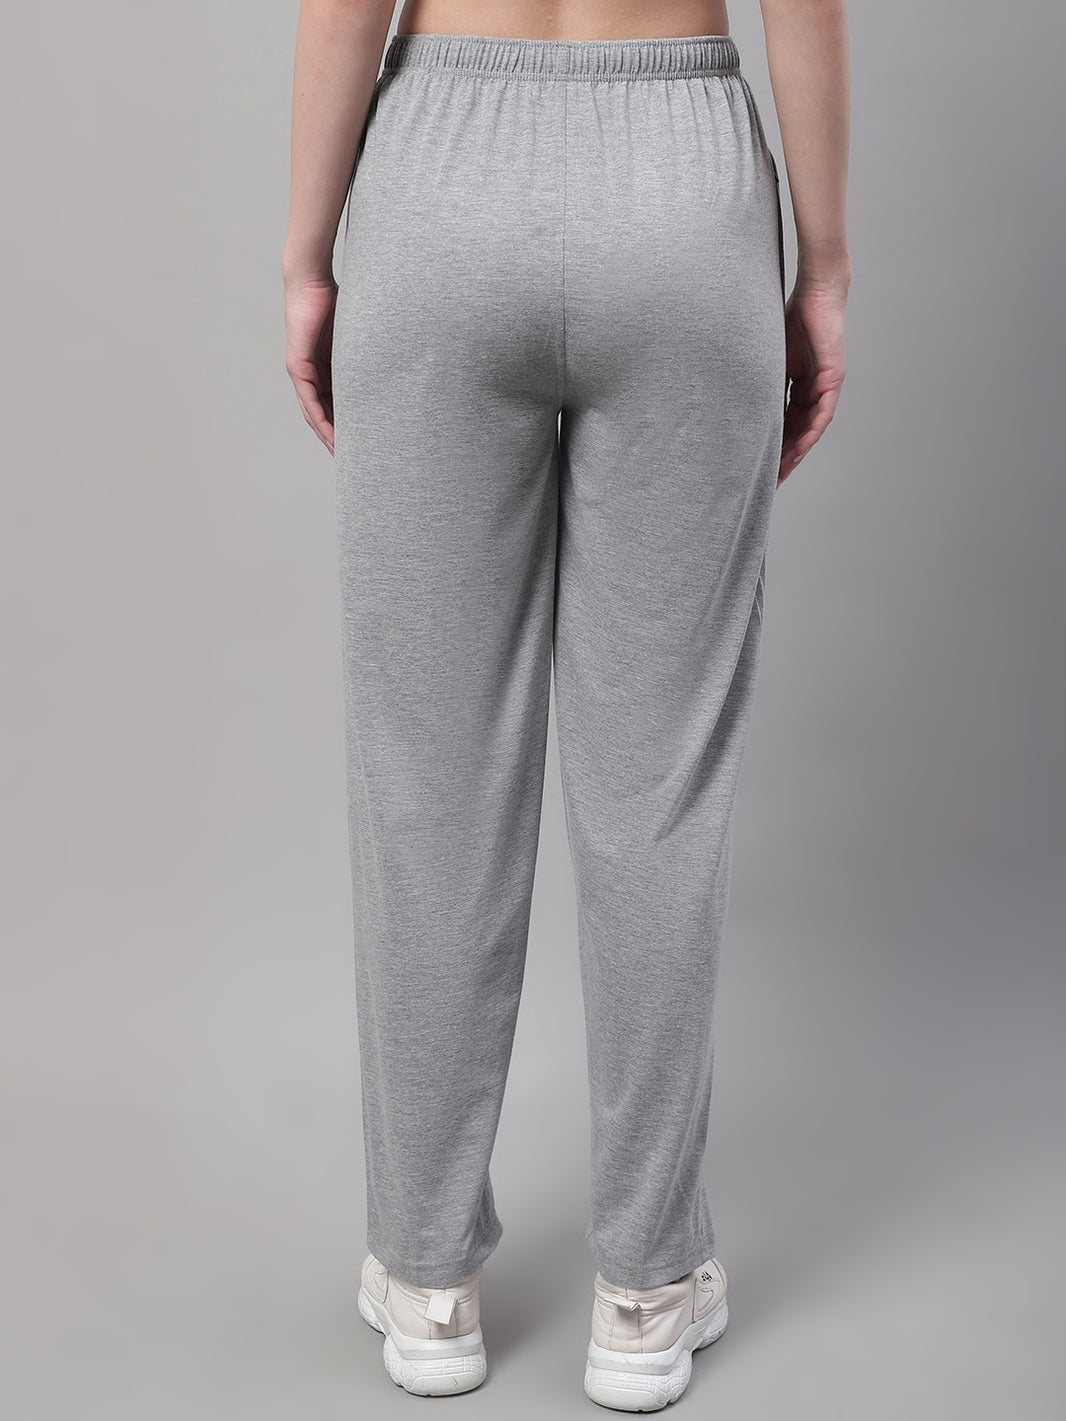 Vimal Jonney Grey Melange Regular fit Cotton Trackpant for Women(Zip On 1 Side Pocket)